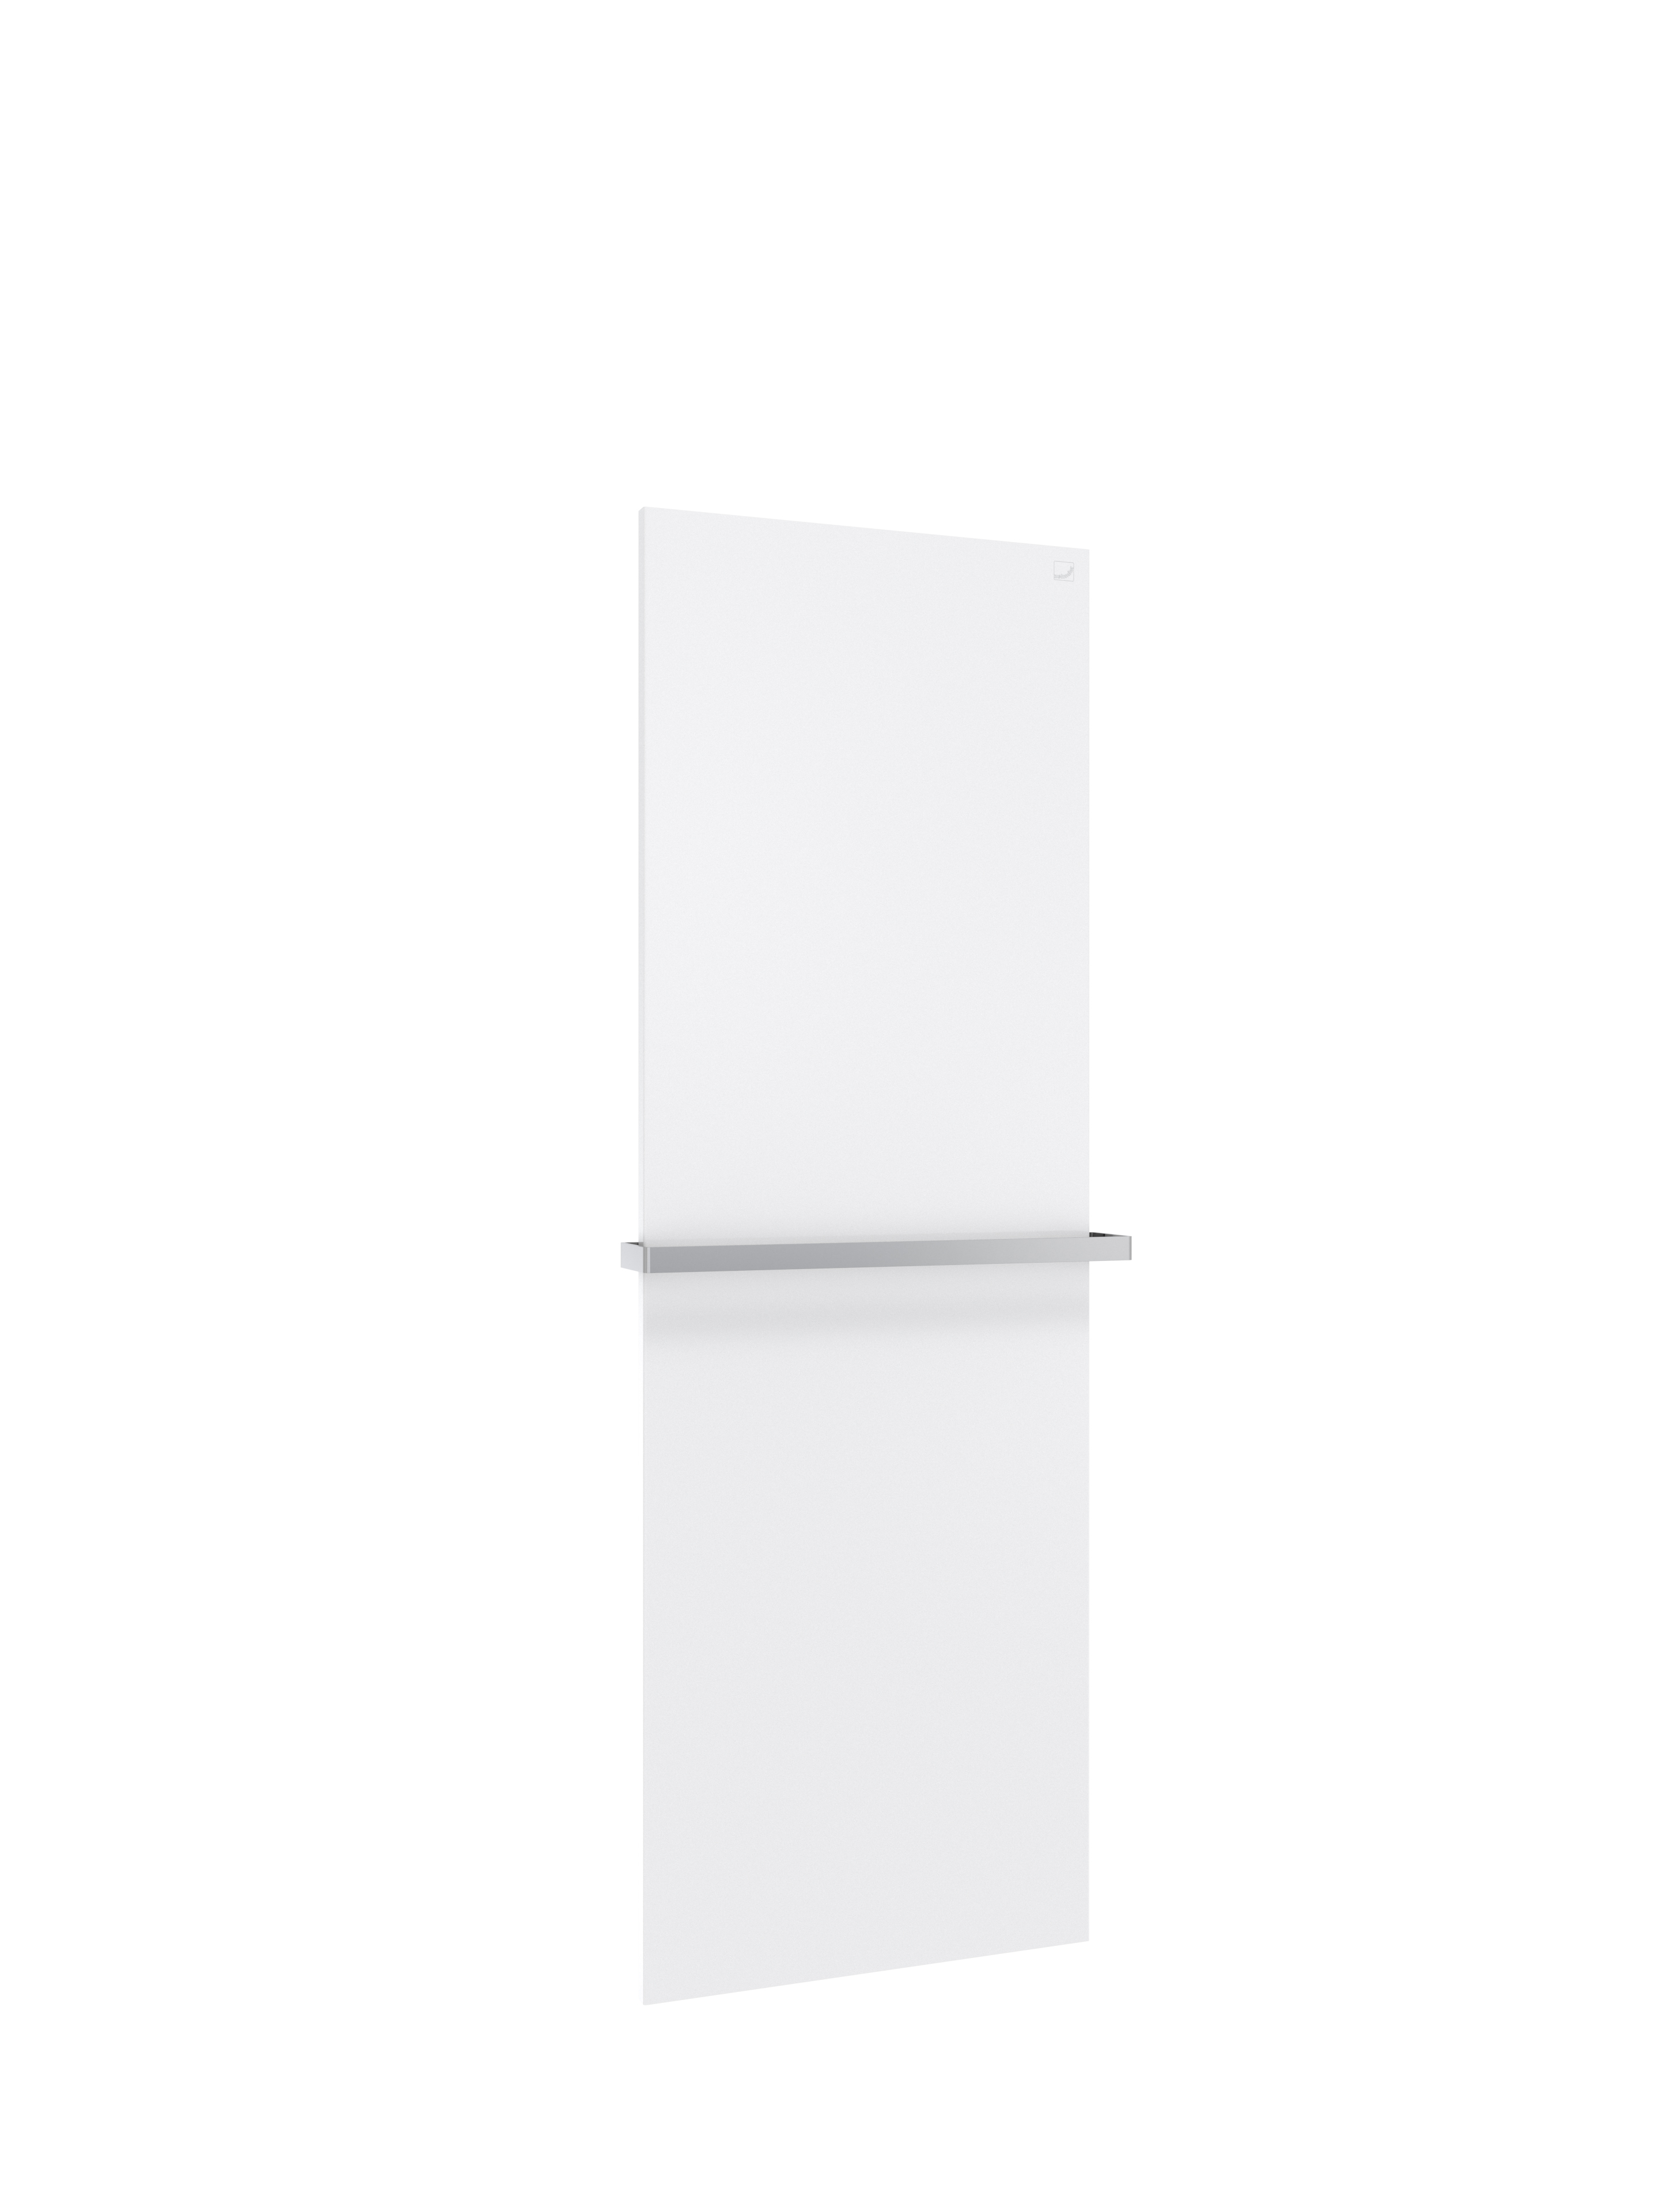 Zehnder Design-Elektroheizkörper „Fina Lean Bar“ 50 × 150 cm in Verkehrsweiß (RAL 9016, glänzend)